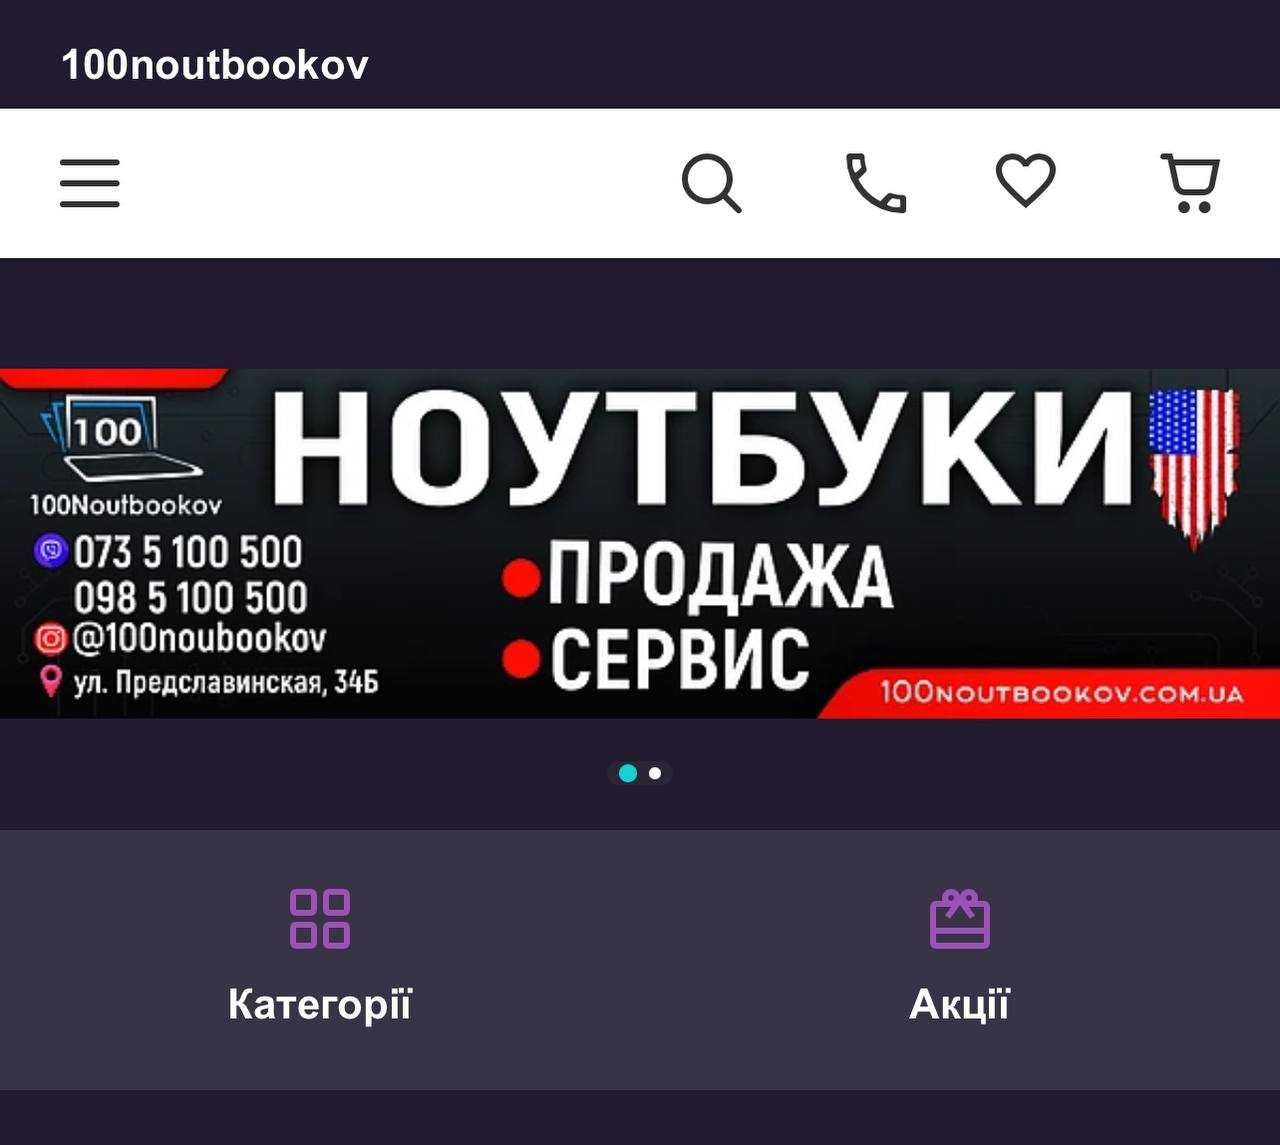 Уникальное доменное имя для твоего бизнеса + сайт 100noutbookov.com.ua